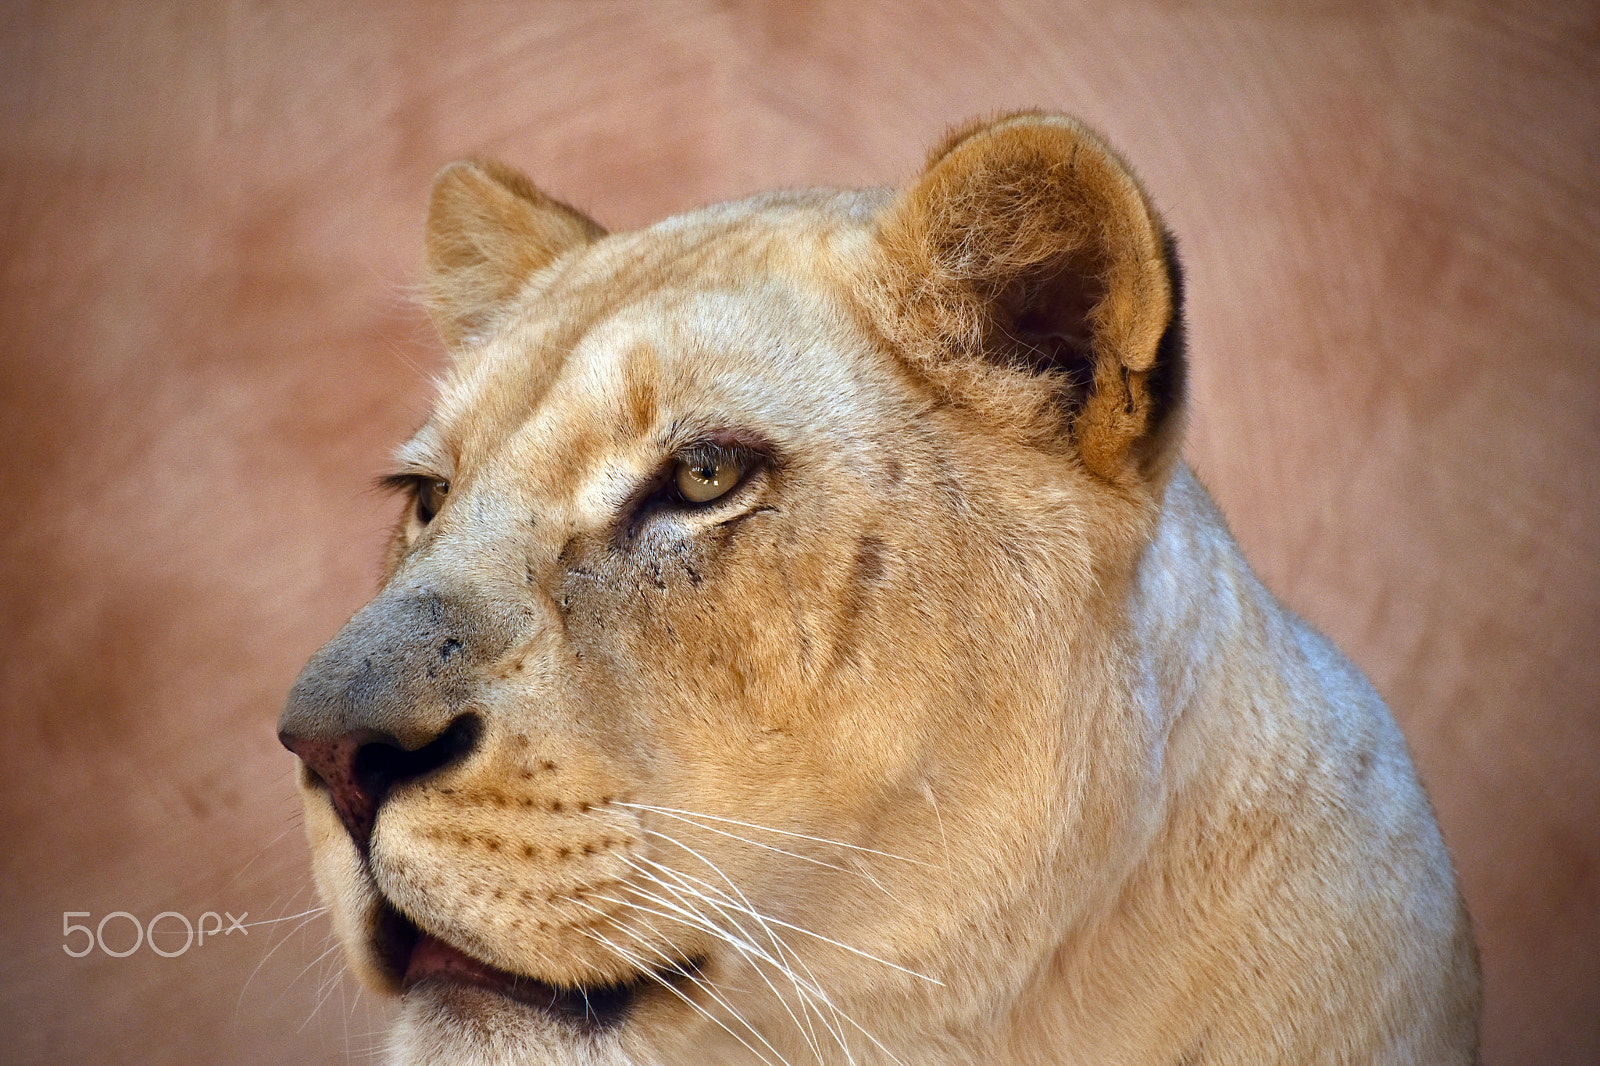 Nikon D5500 + Nikon AF-S DX Nikkor 18-300mm F3.5-6.3G ED VR sample photo. African lioness close up portrait photography